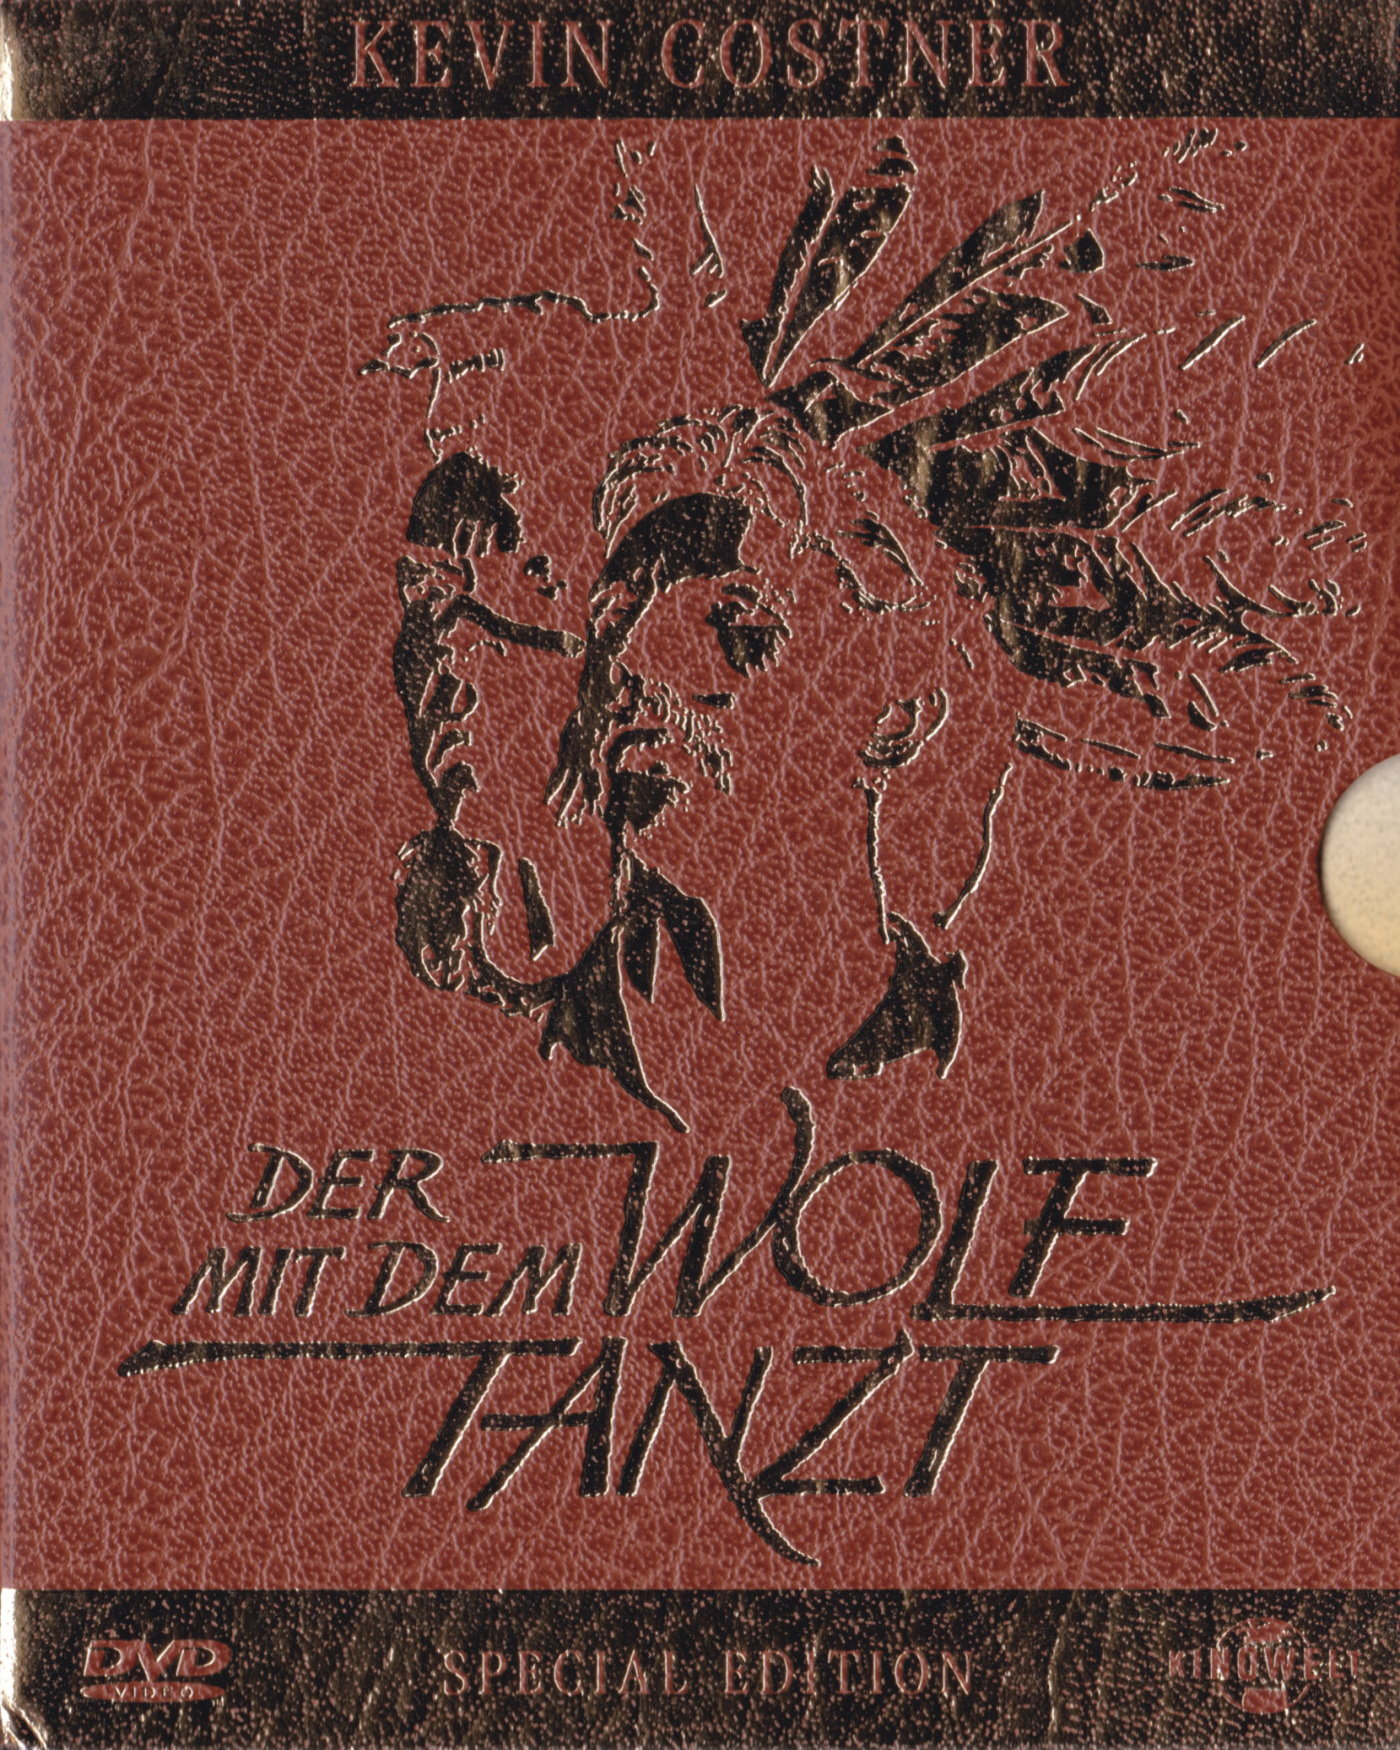 Cover - Der mit dem Wolf tanzt.jpg